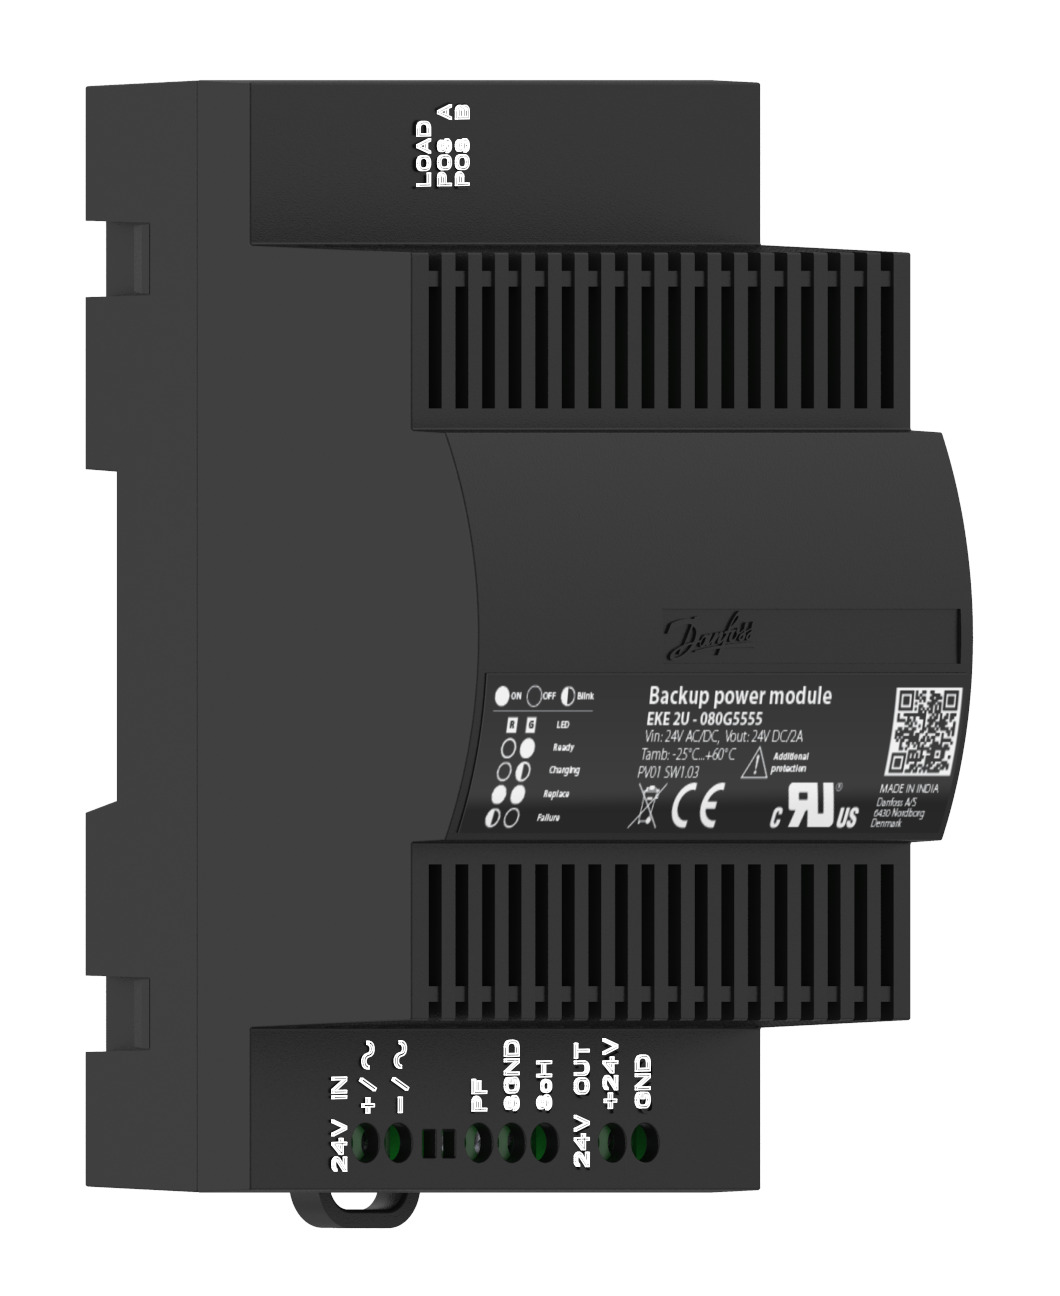 Backup power module, EKE 2U